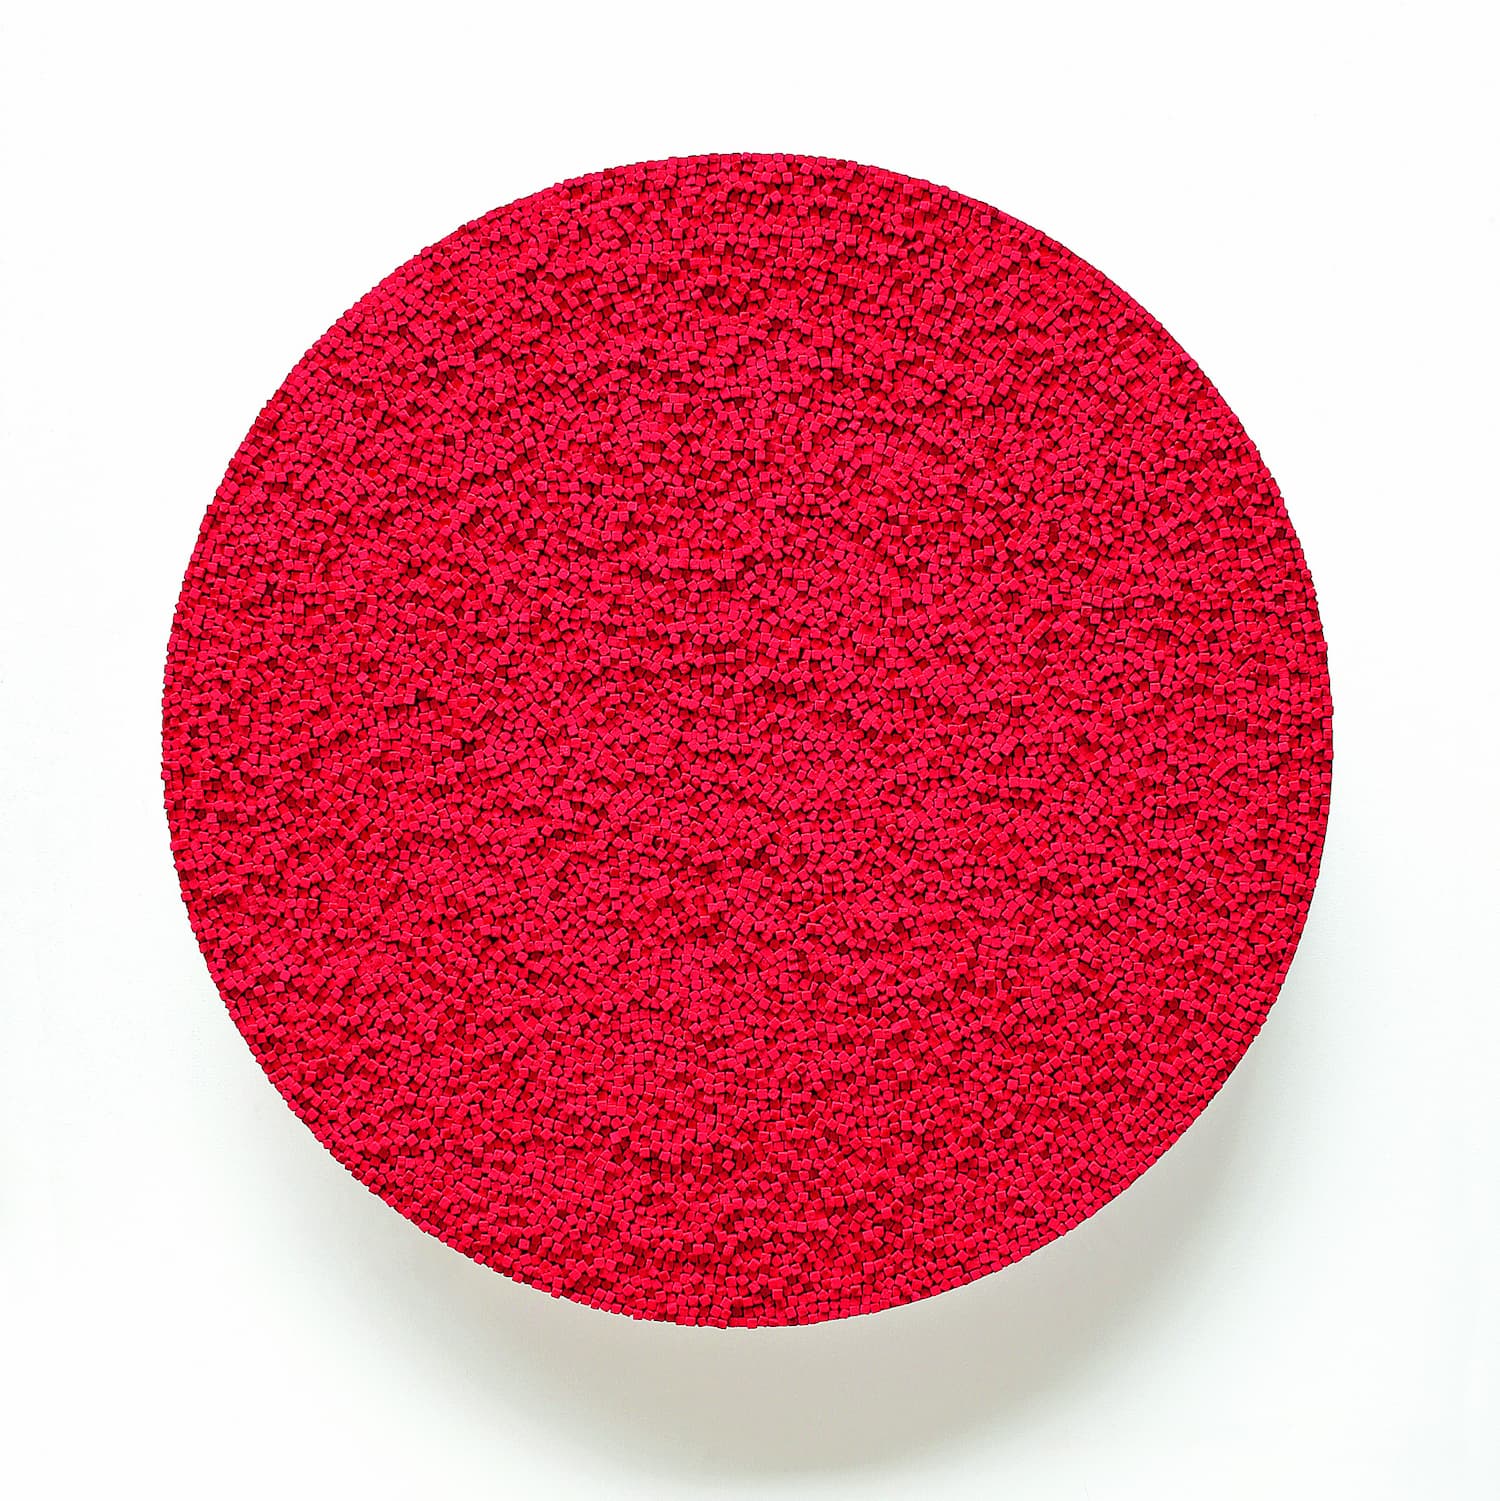 „Tondo rosso“, dunkelrote Kreide, 150 x 150 cm, 2014